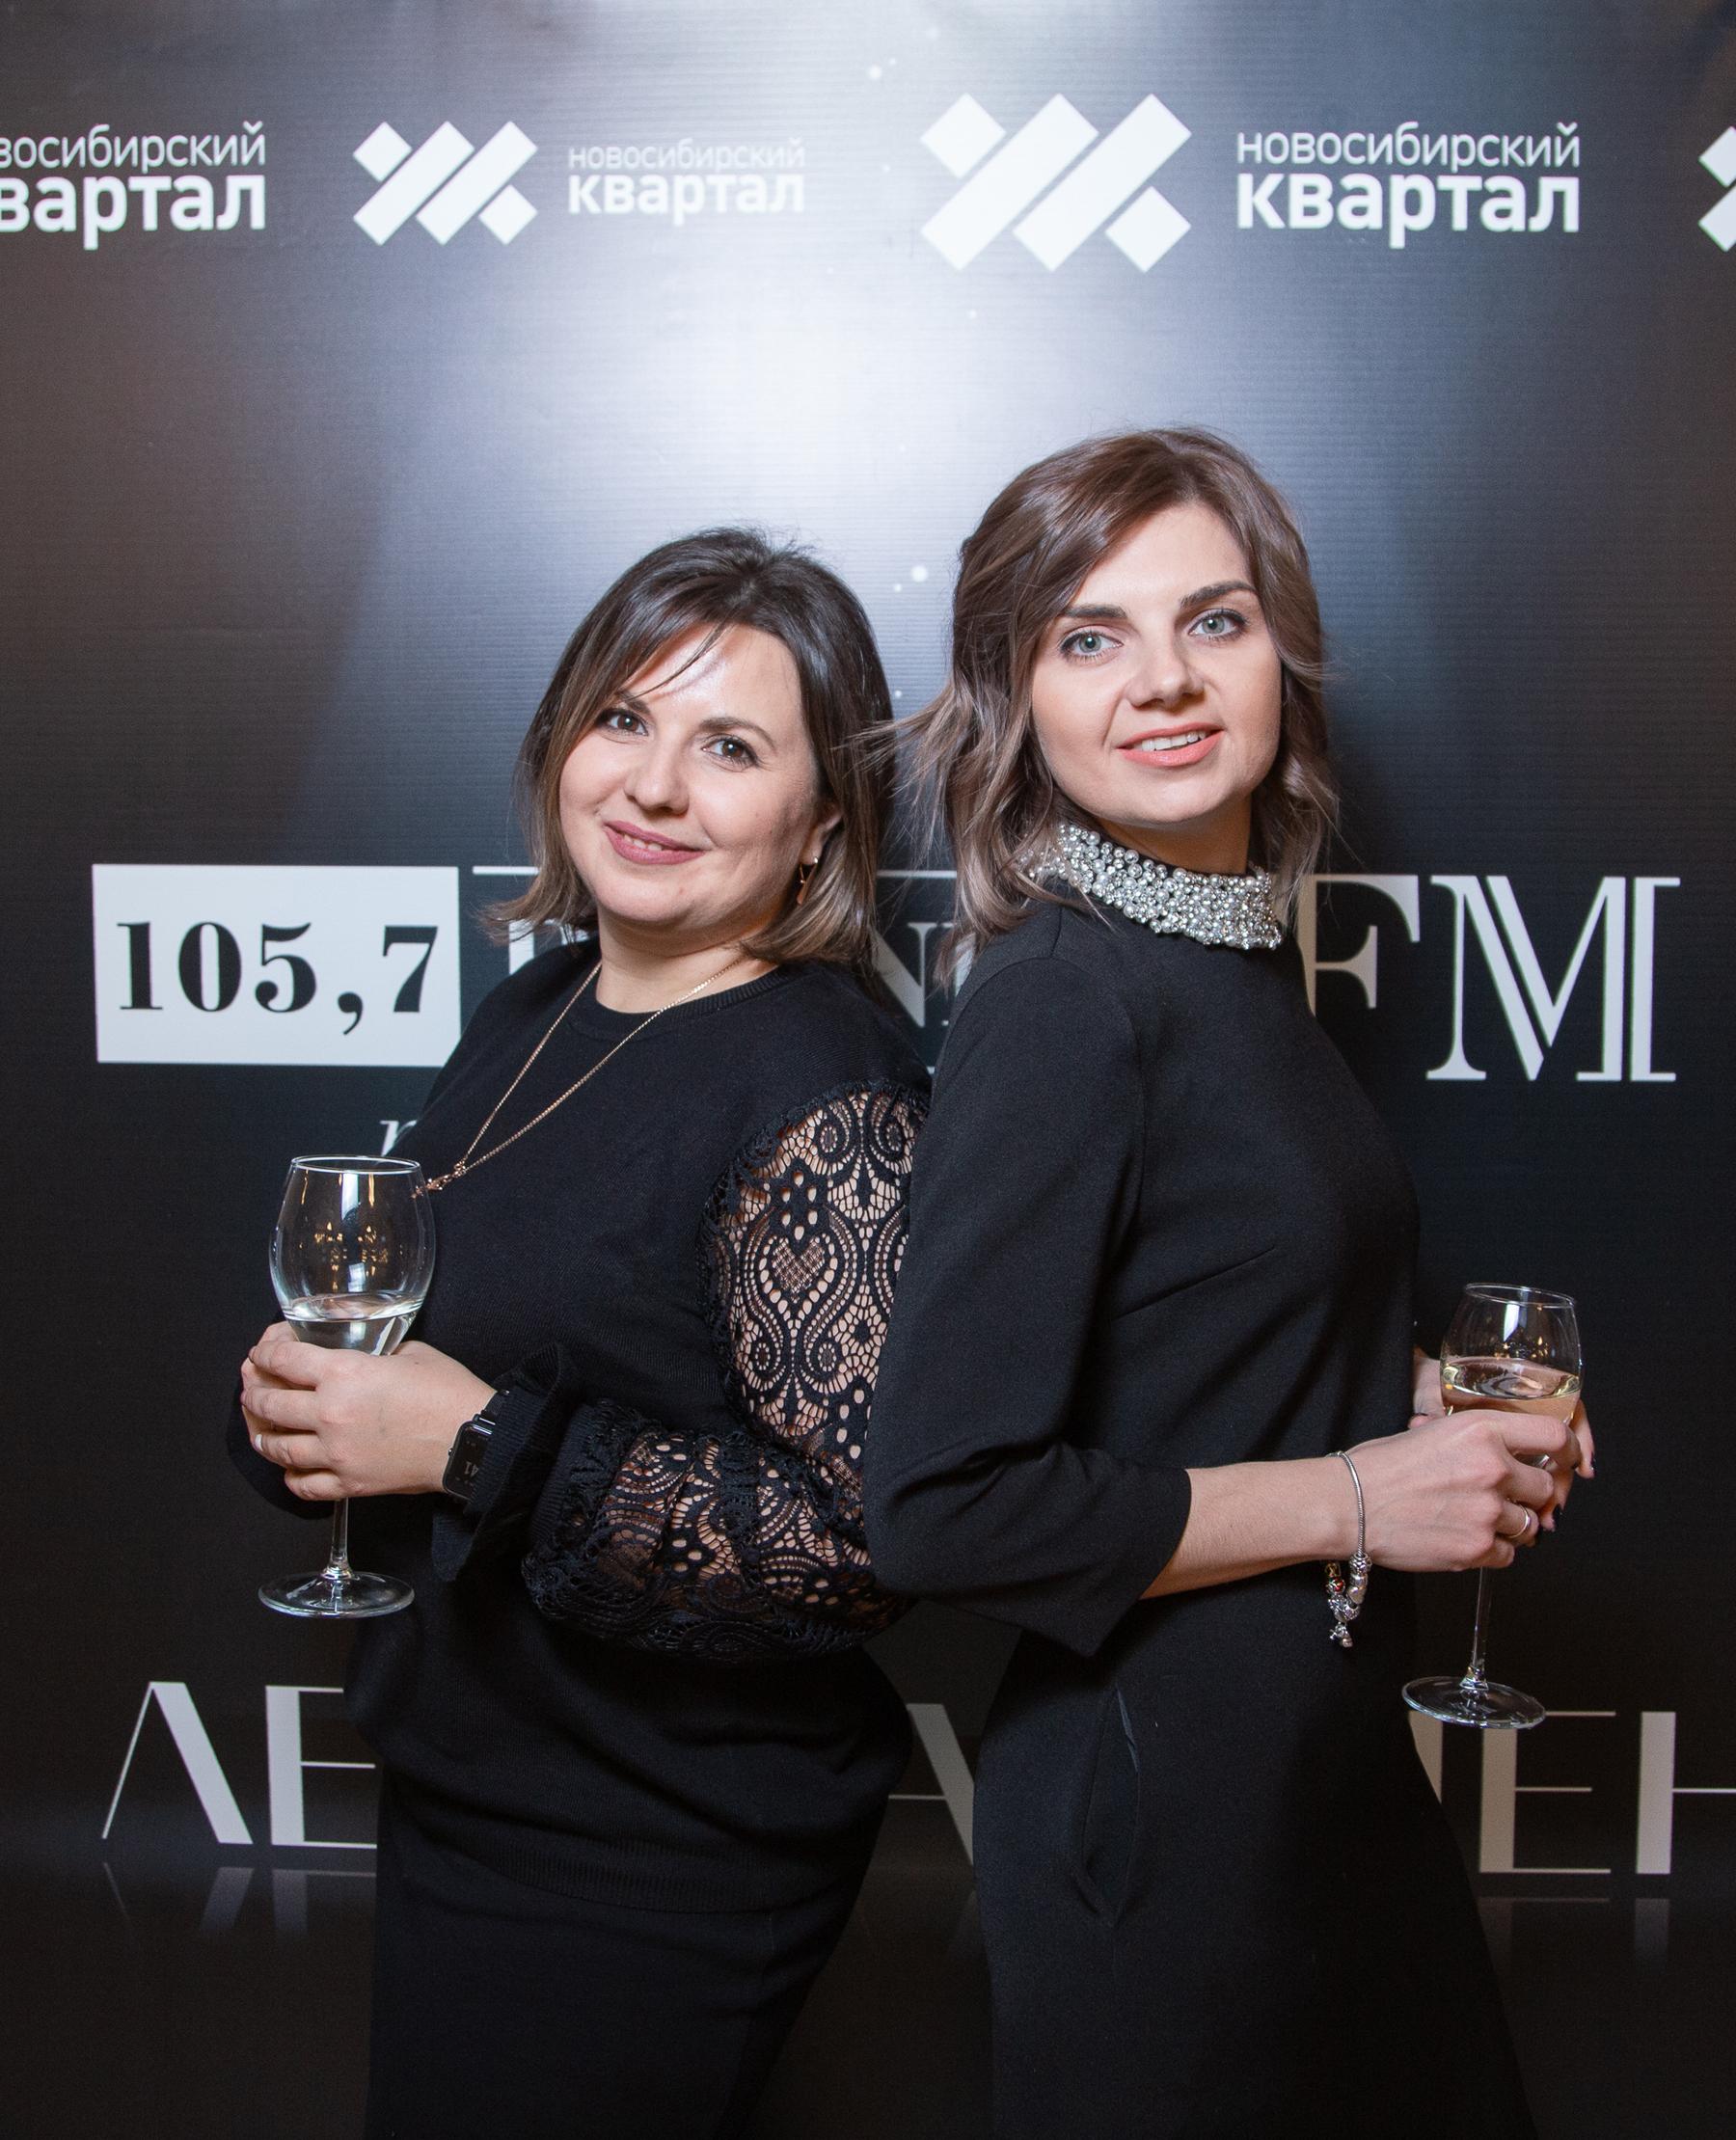 Фото Радиостанция Business FM в Новосибирске отметила 11 лет в эфире 39